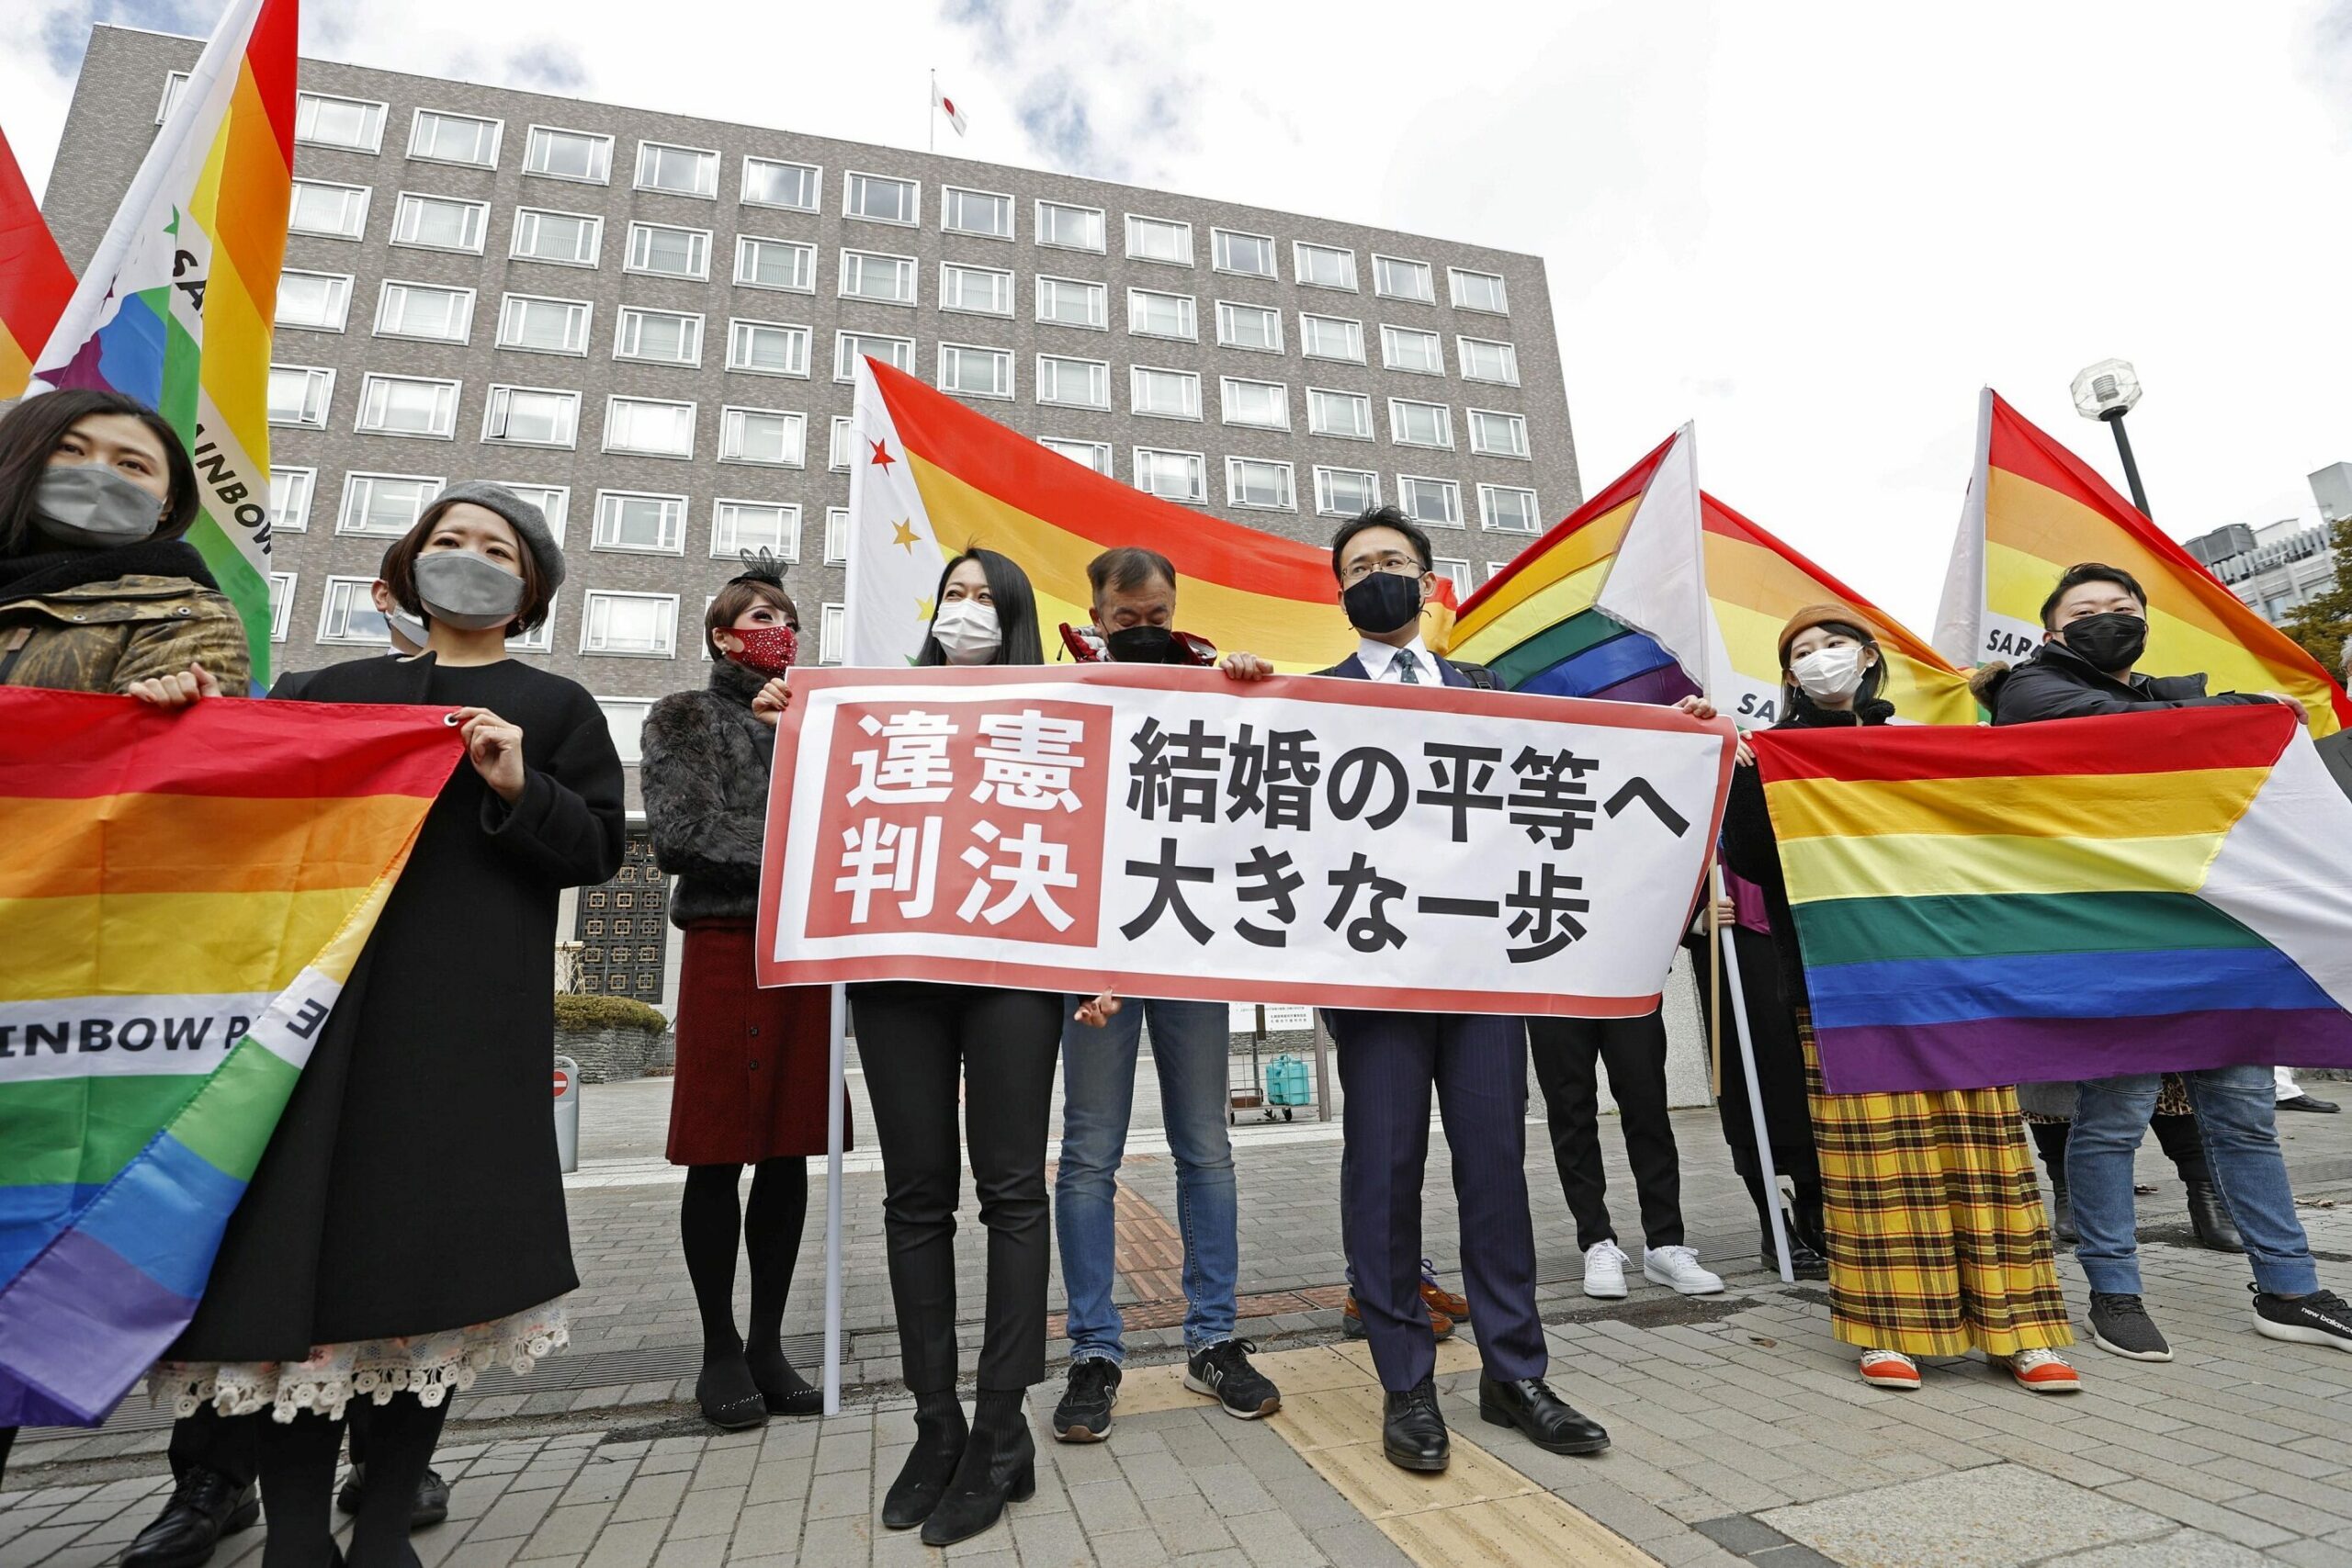 คดีประวัติศาสตร์! ศาลญี่ปุ่นชี้ ห้ามคนเพศเดียวกันแต่งงานขัดรัฐธรรมนูญ